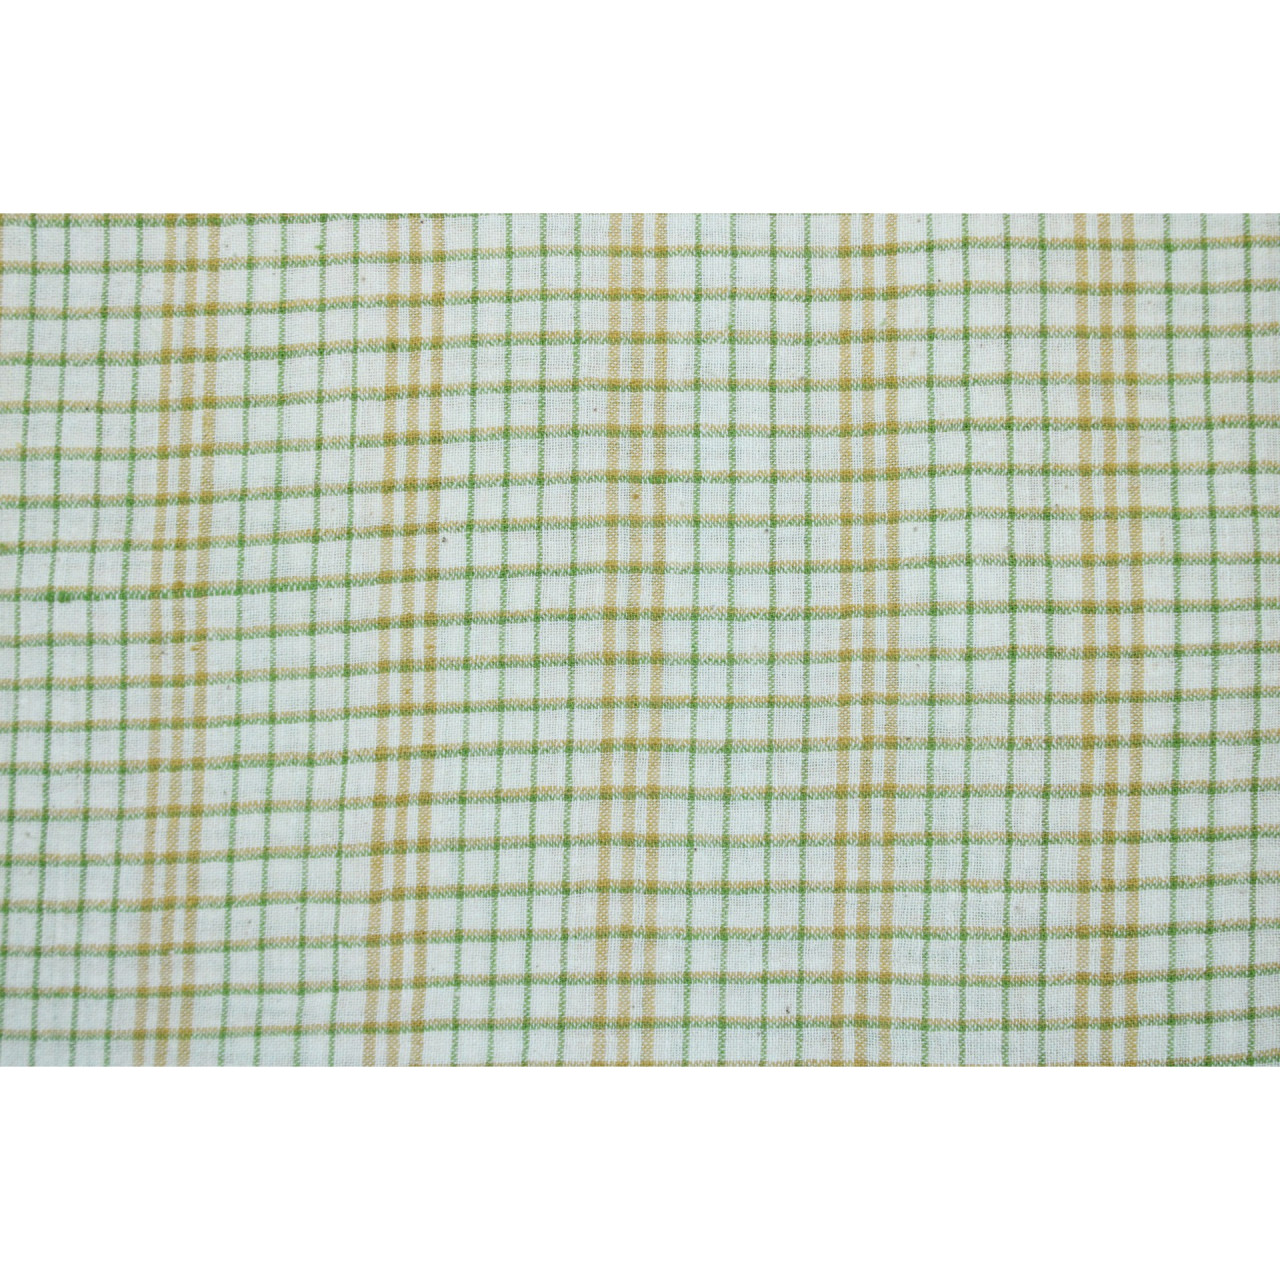 (2125) Kala cotton Azo-free dyed Kutchy yardage from Kutch - Green, white, yellow, checks, plain